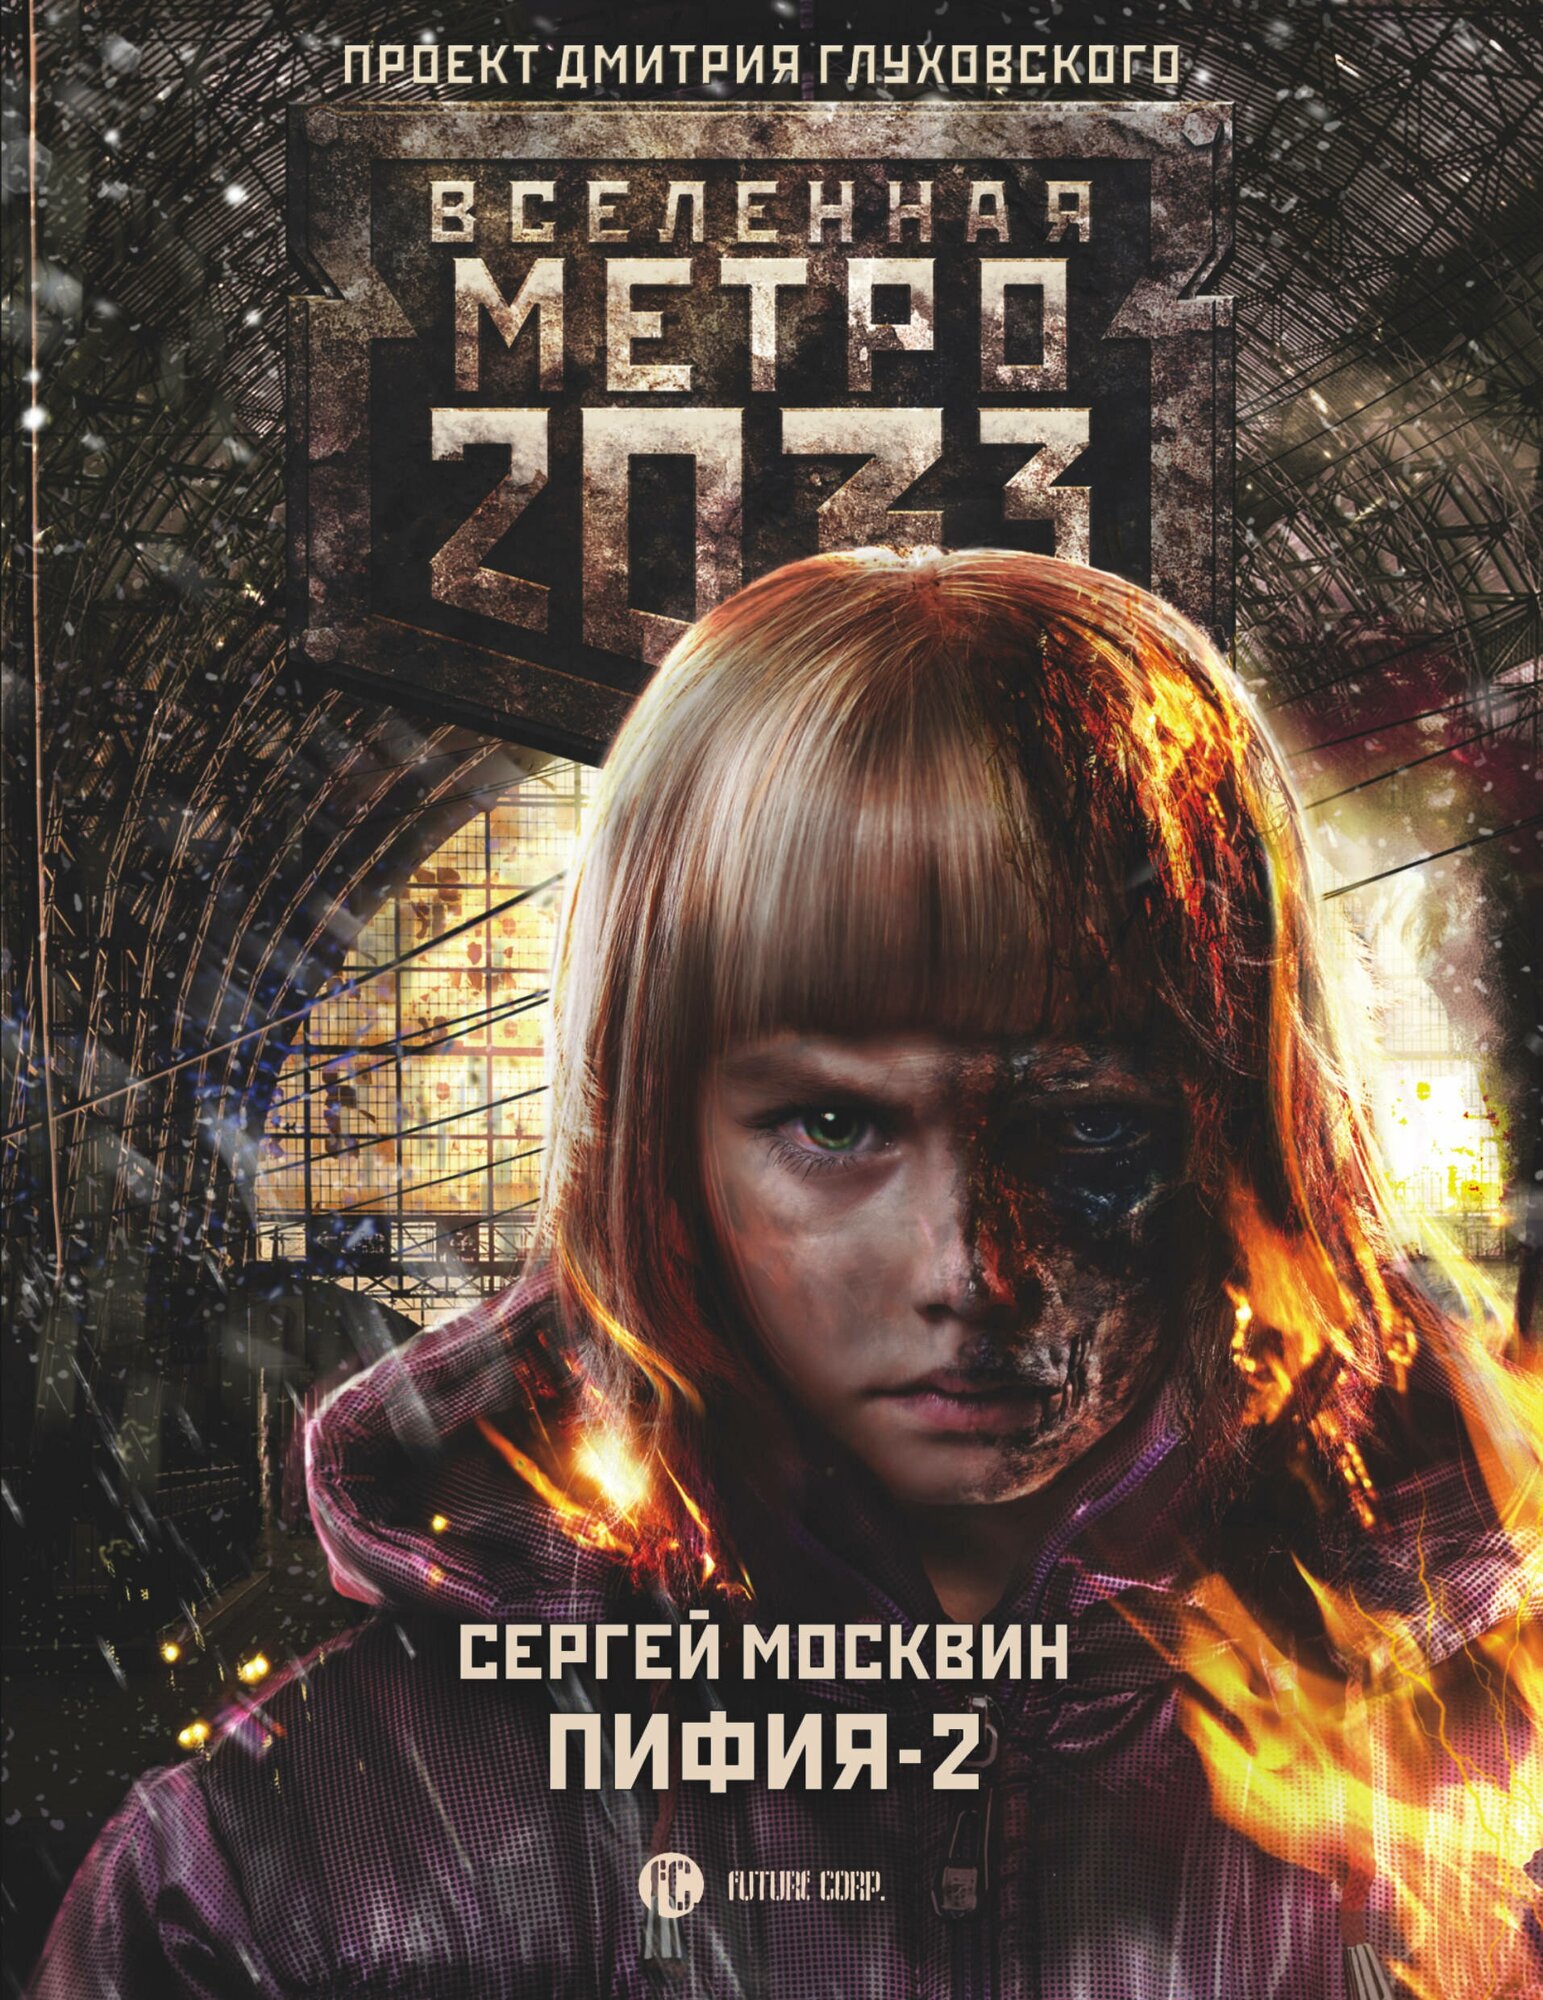 Метро 2033: Пифия-2. В грязи и крови Москвин С. Л.